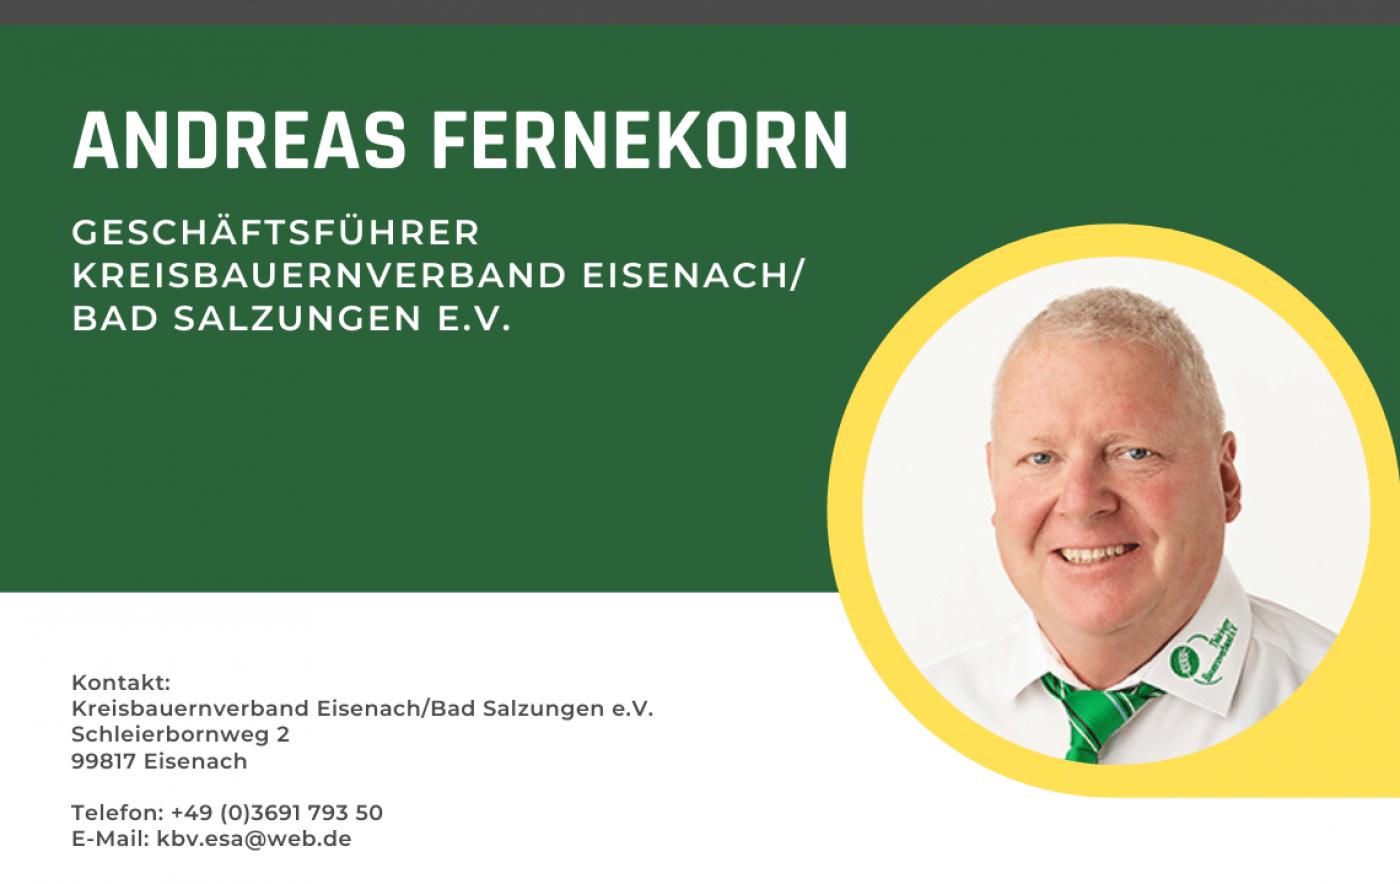 Kreisbauernverband Eisenach/Bad Salzungen mit neuer Geschäftsführung